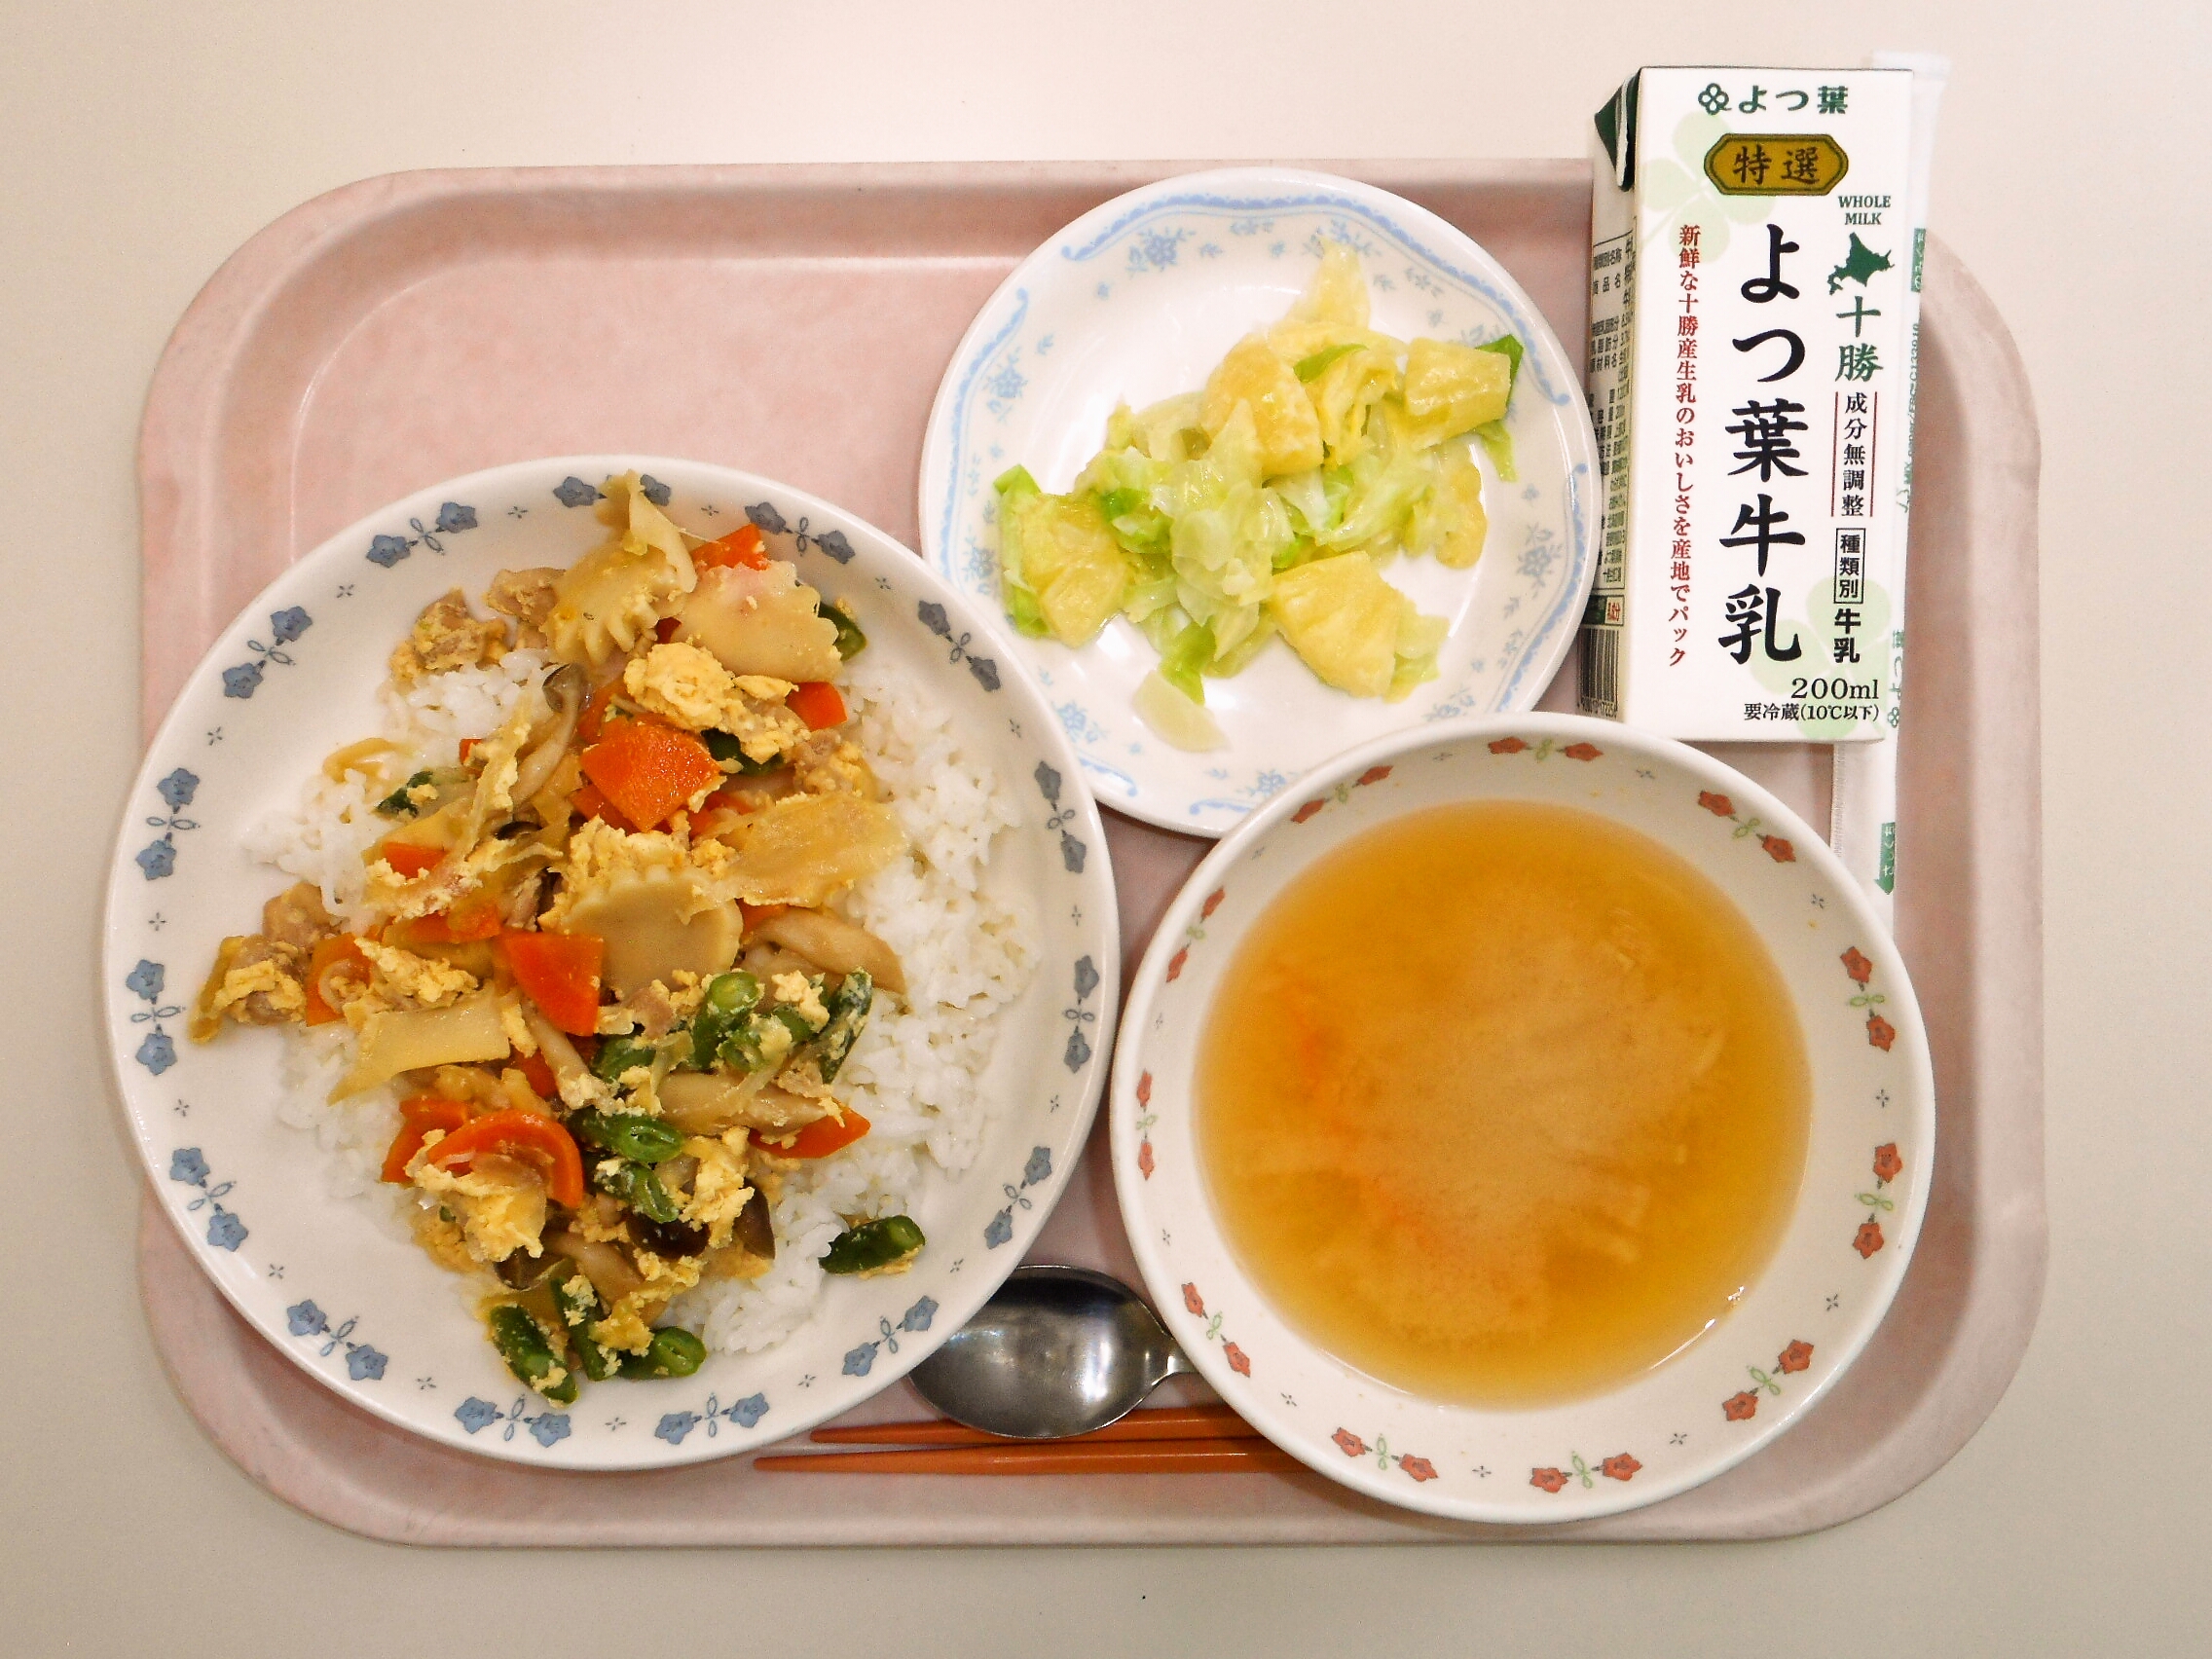 親子丼、みそ汁（大根・人参）、パイン入りコールスローサラダ、牛乳